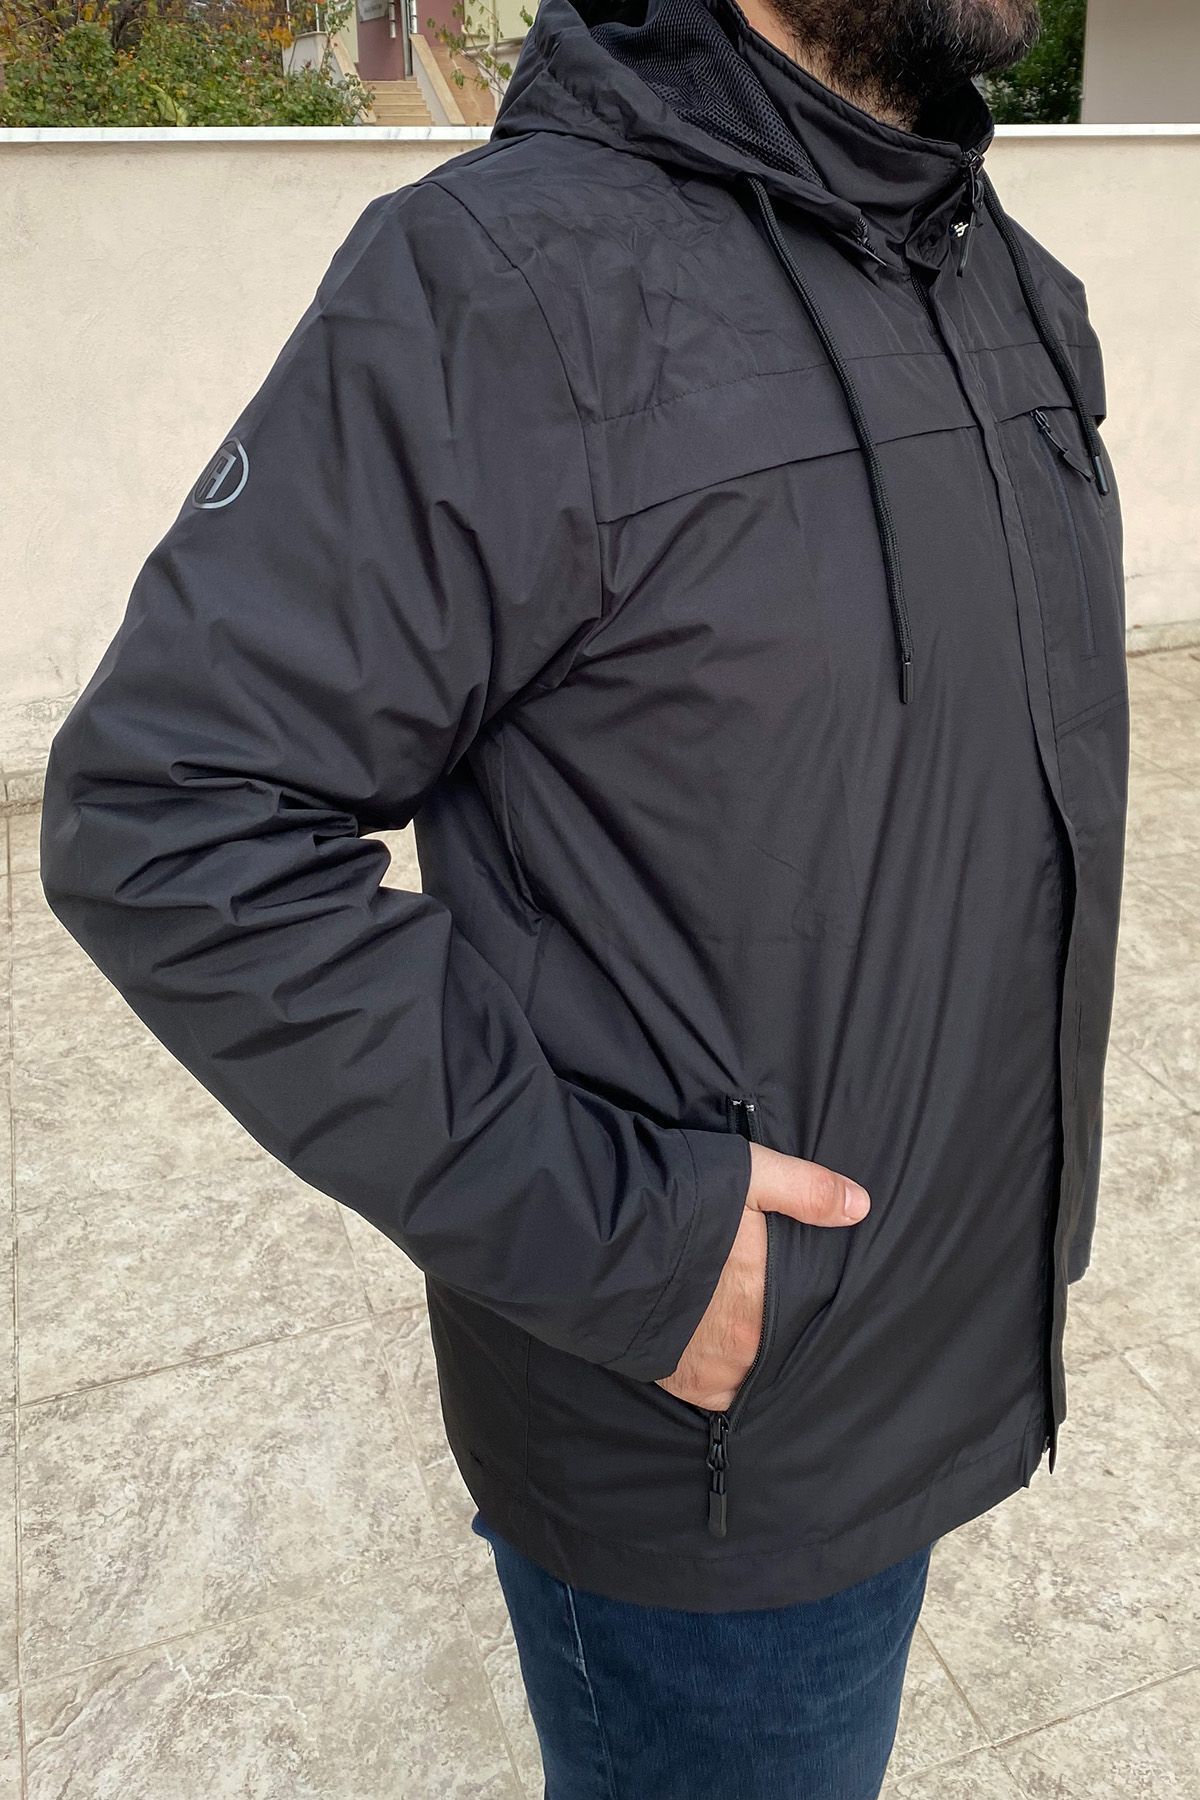 Remsa Spor Büyük Beden Erkek Kapüşonlu Rüzgar Geçirmez Cep Detaylı Içi Fileli Yağmurluk Siyah Th901